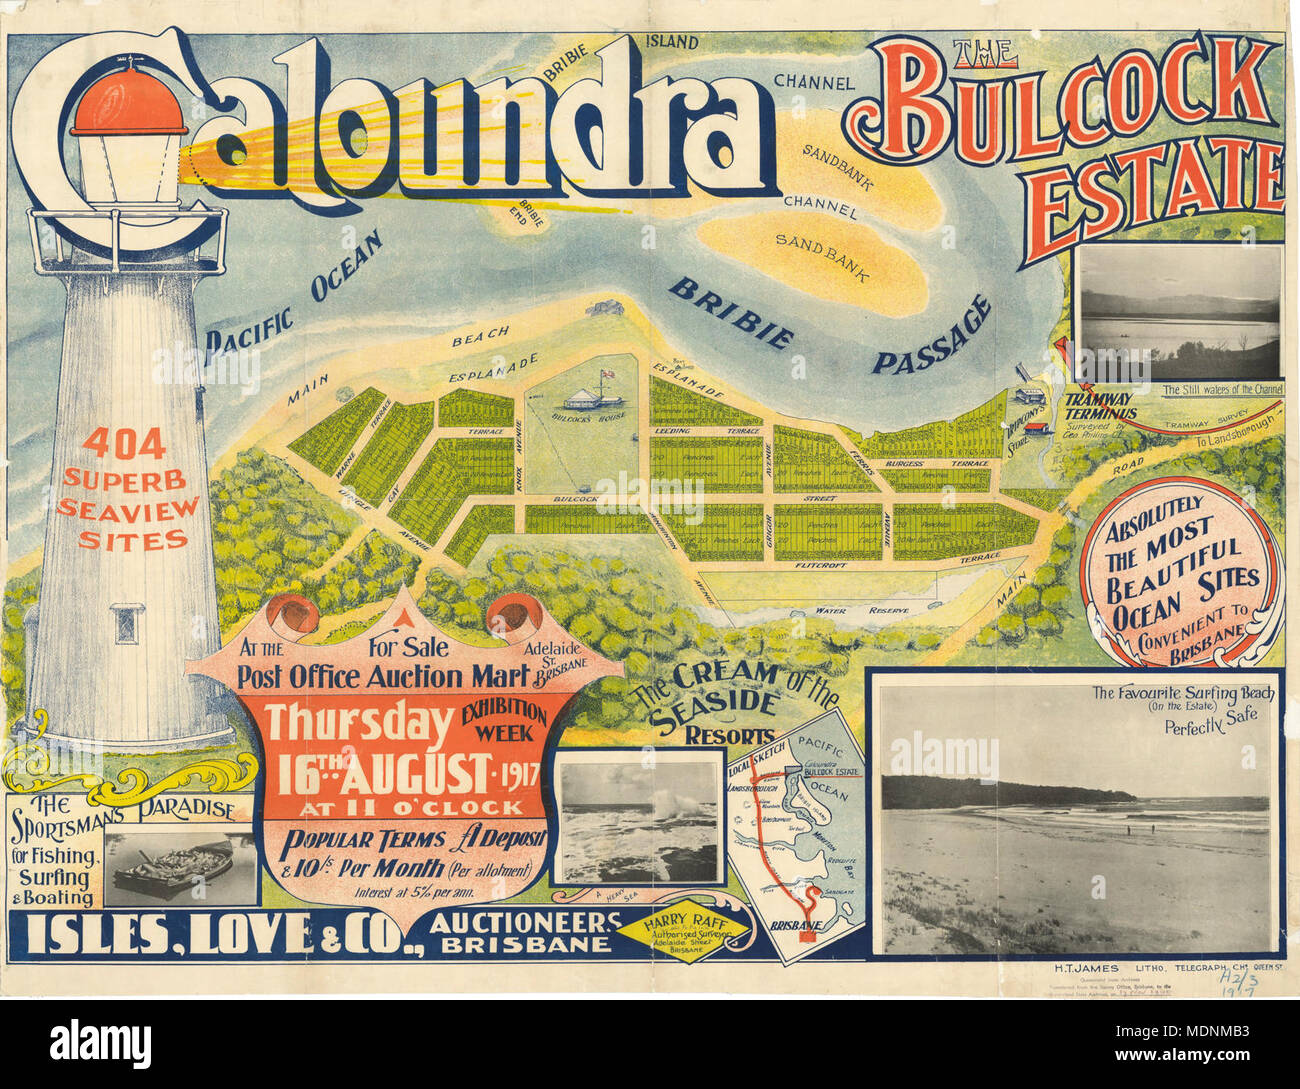 Real estate map of Bulcock Estate, Caloundra, 1917 Stock Photo